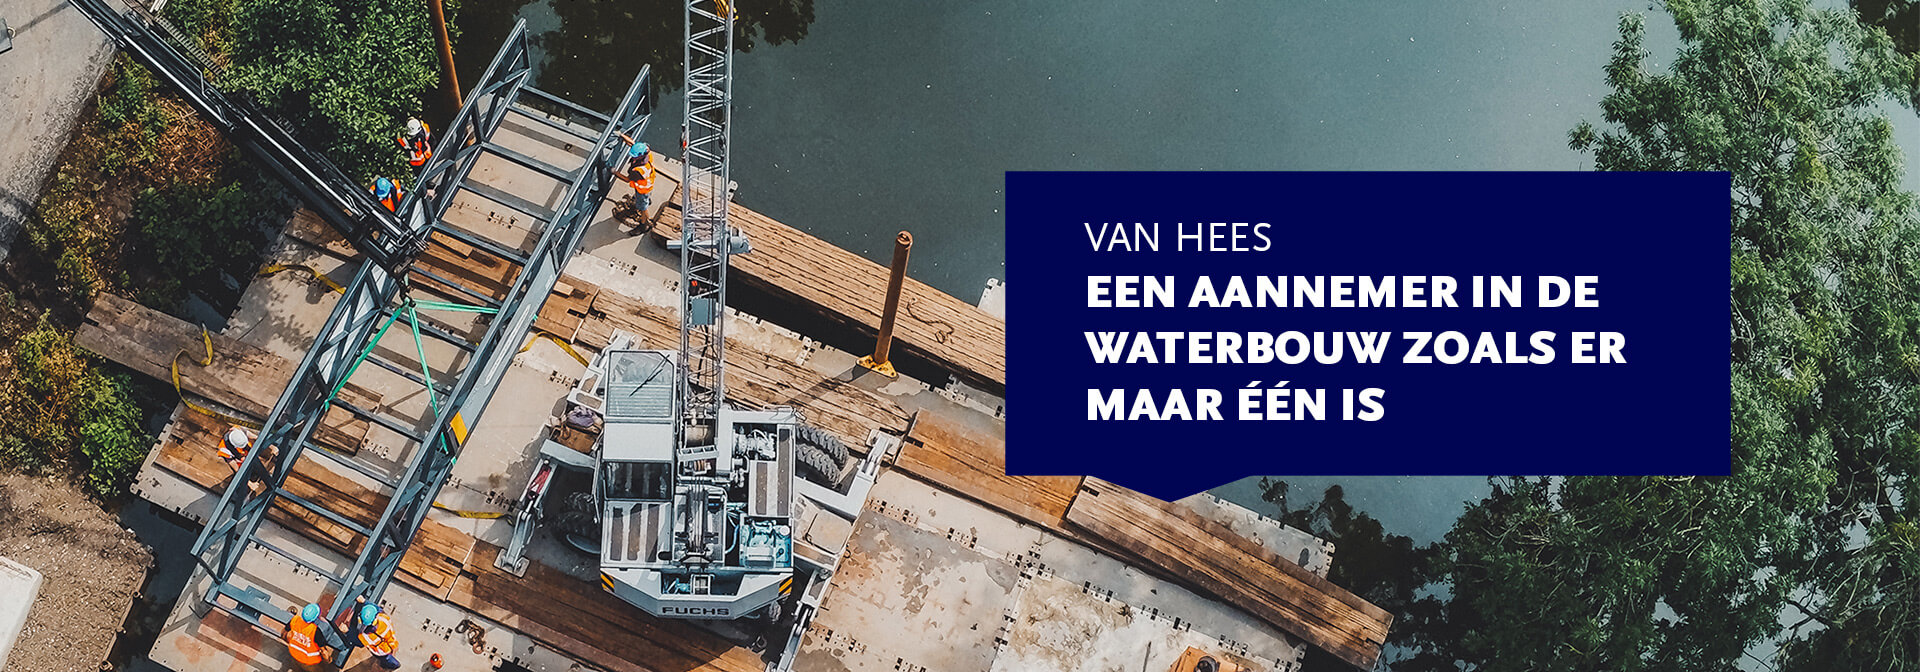 vanheesgroep.nl - aannemer in de waterbouw